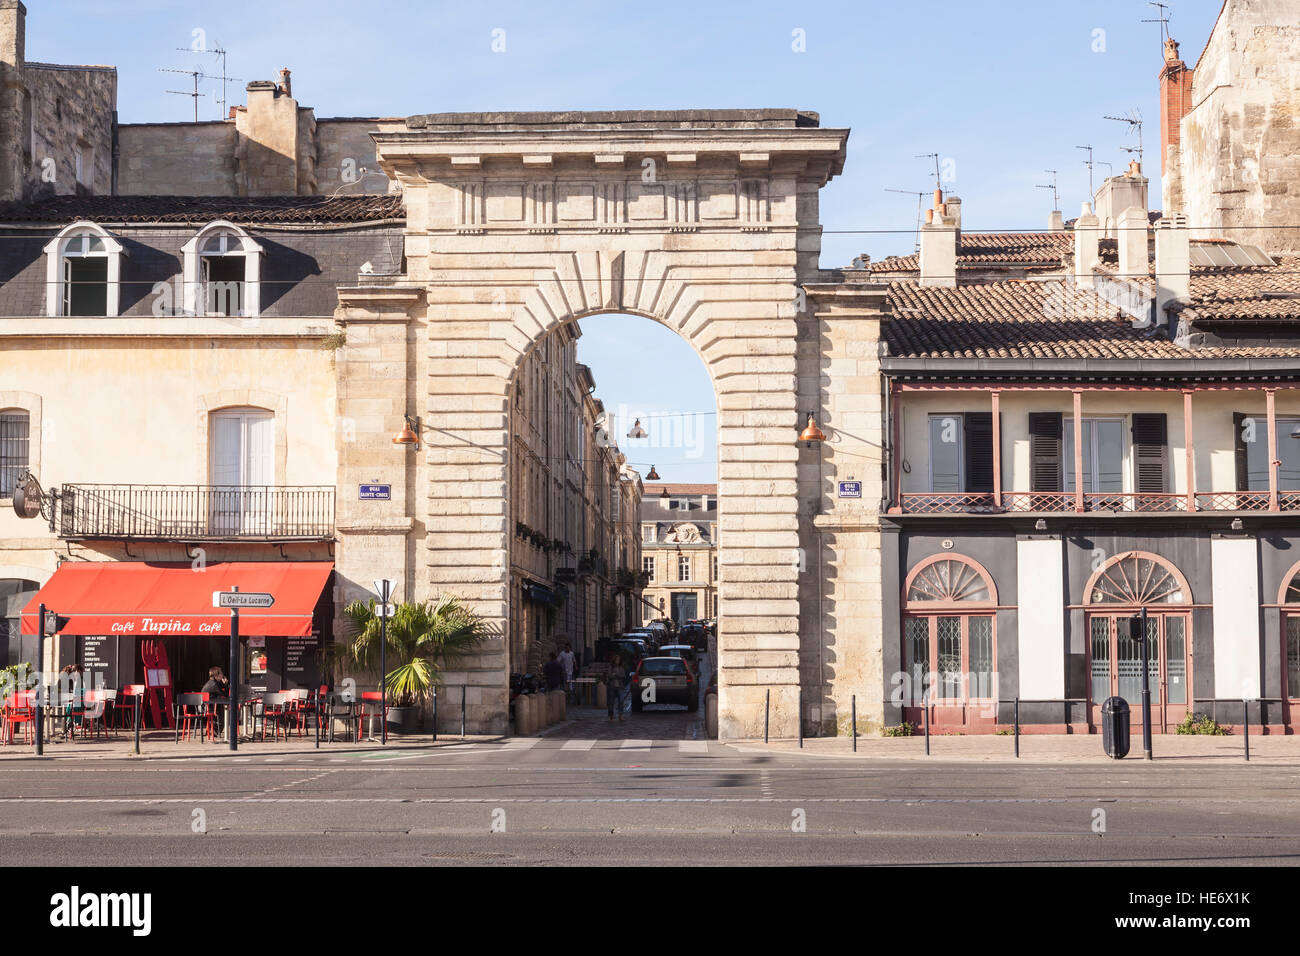 The porte de la monnaie in the city of Bordeaux, France Stock Photo - Alamy